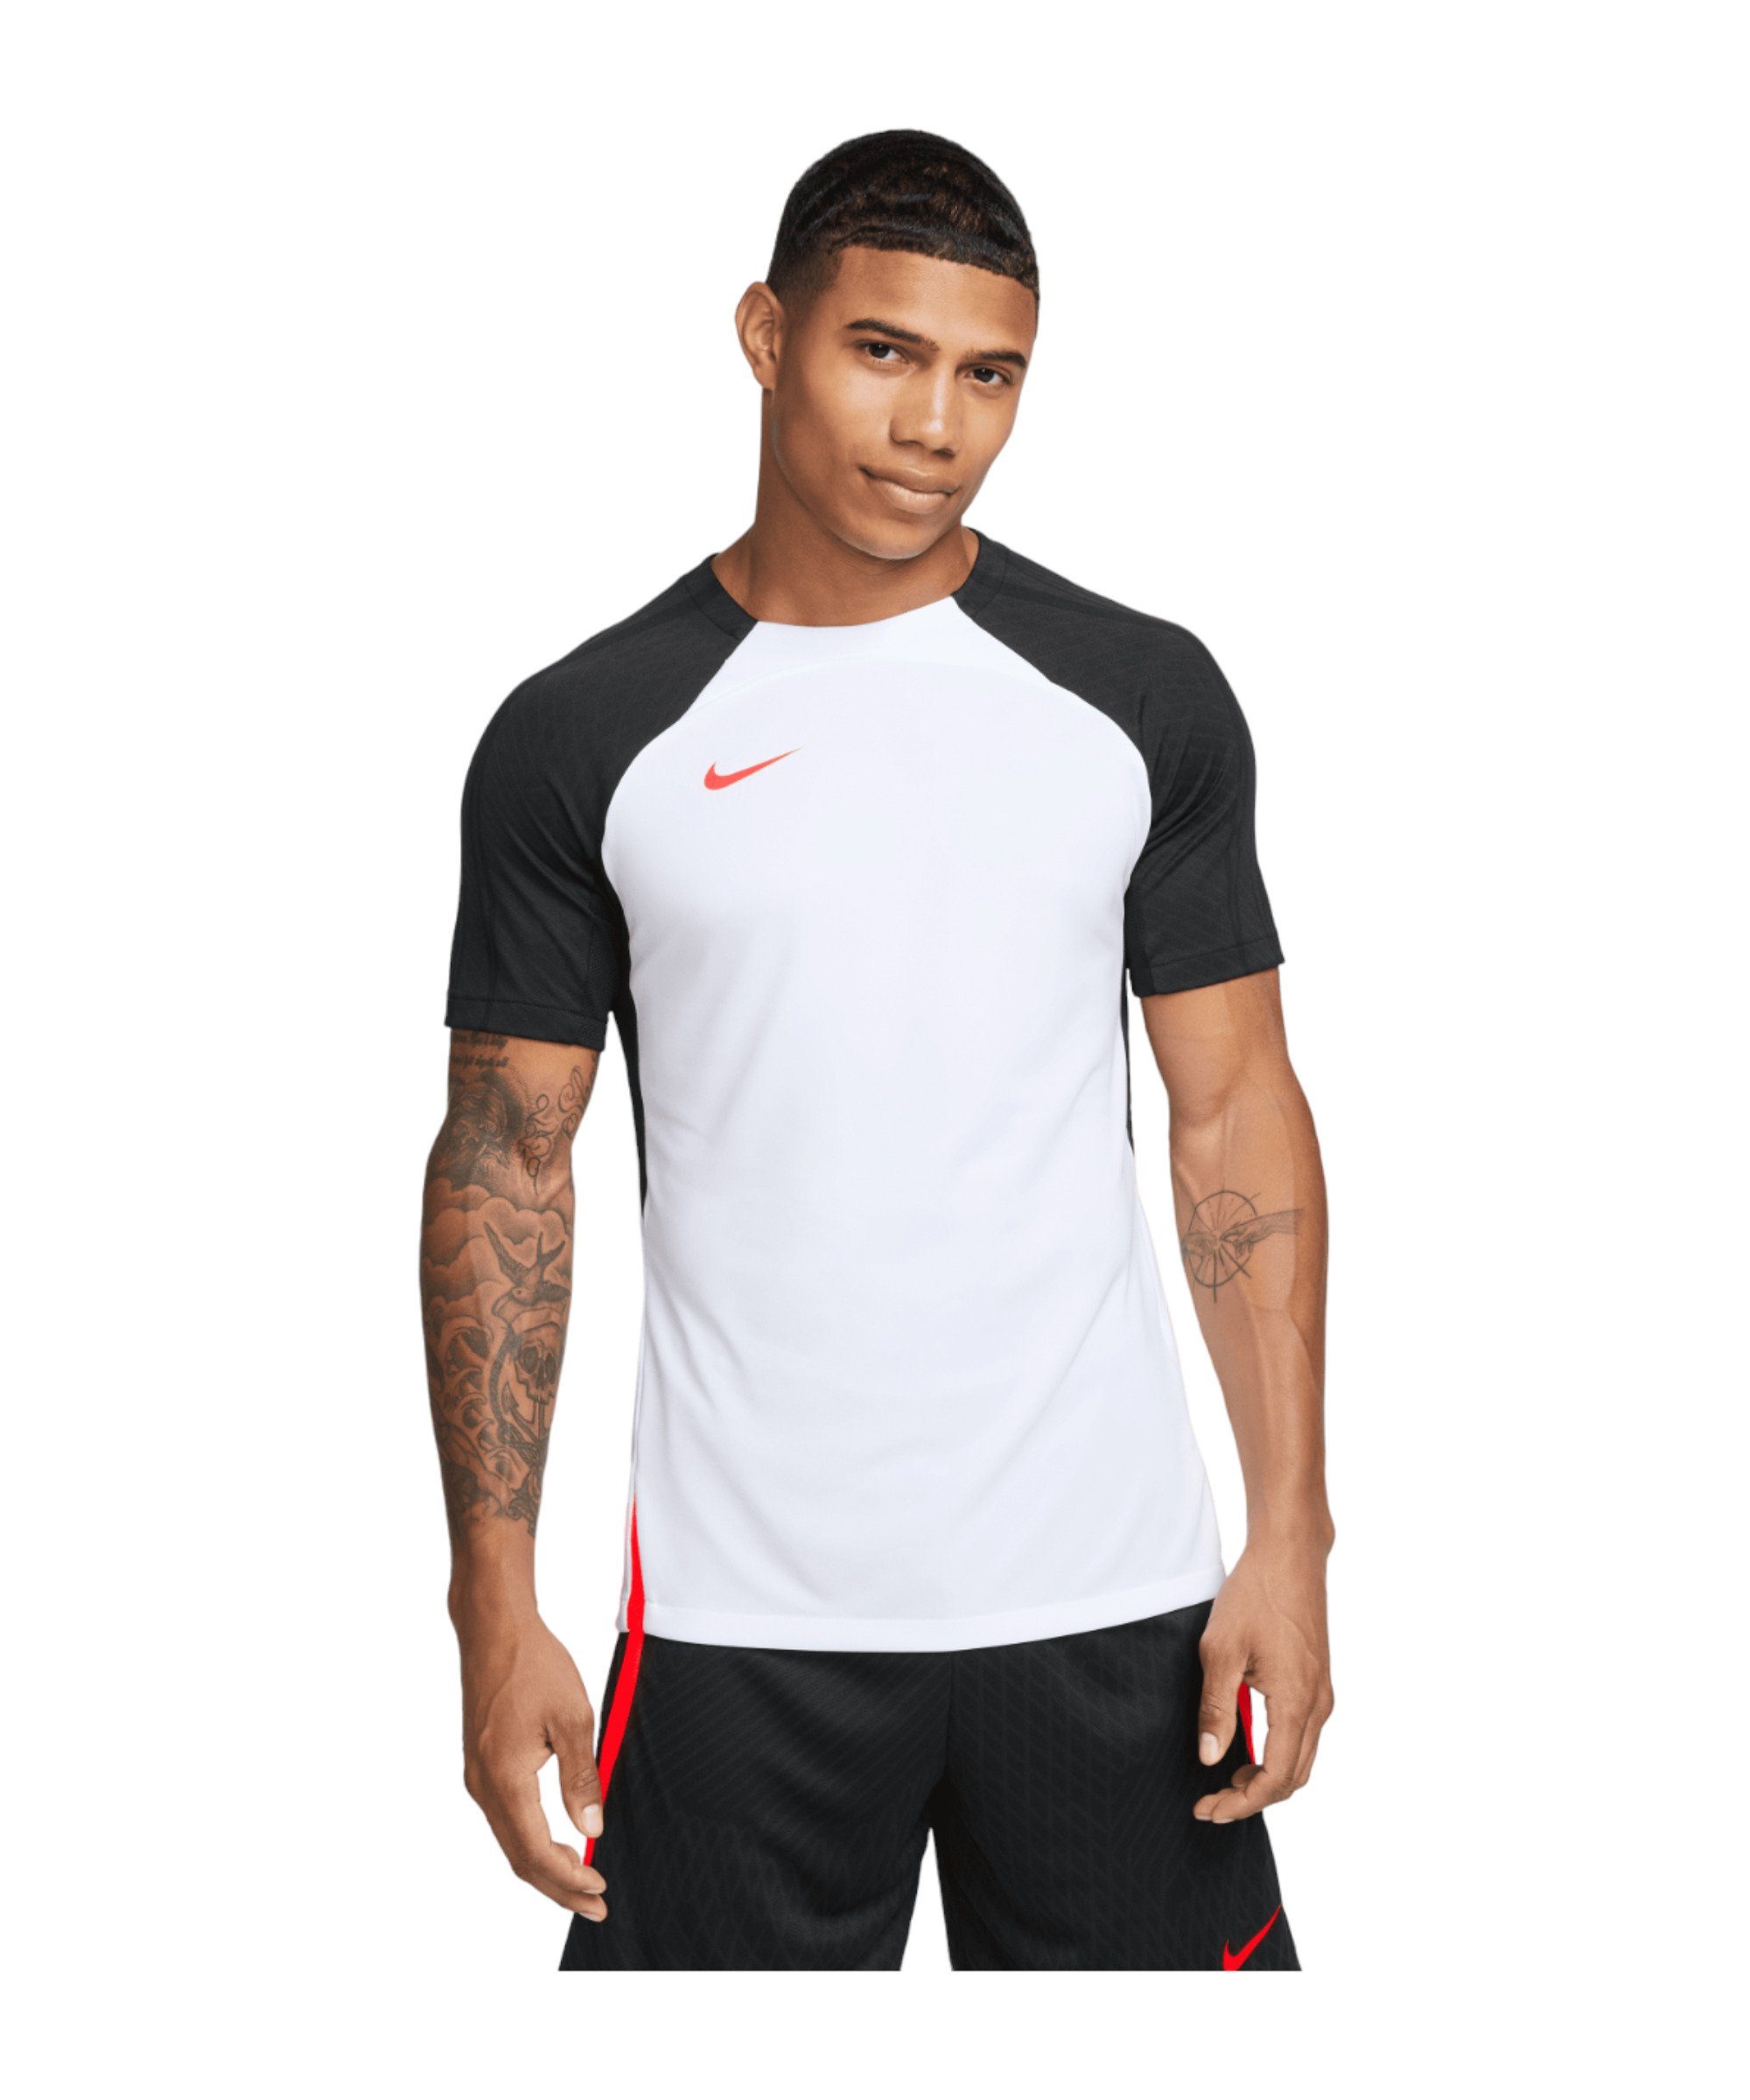 Trainingsshirt weissschwarzrot Nike Strike T-Shirt default